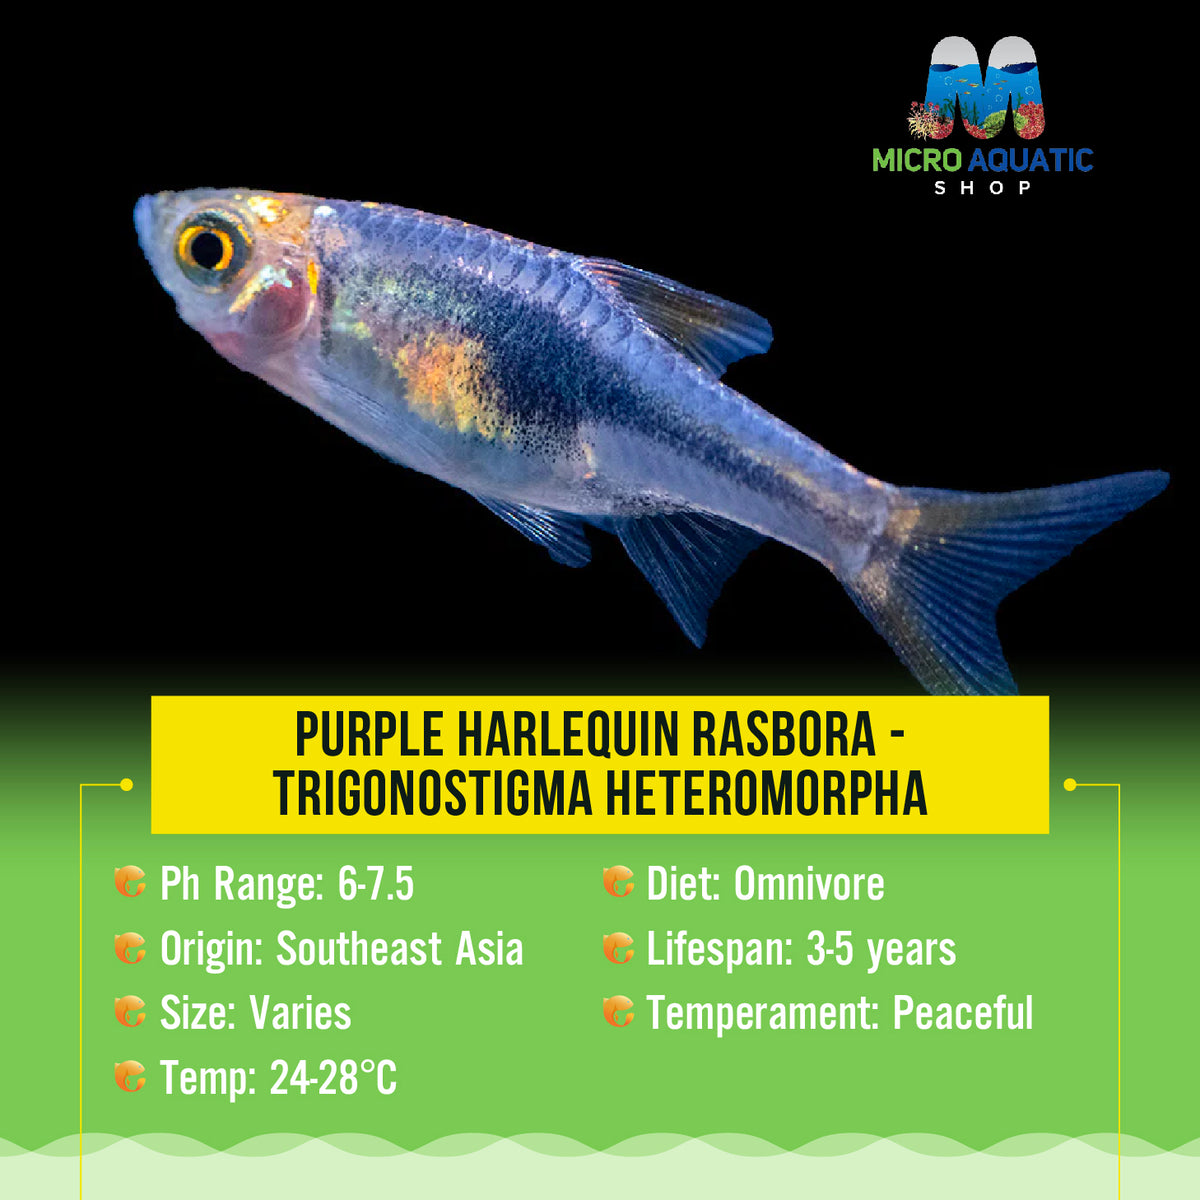 Purple Harlequin Rasbora - Trigonostigma heteromorpha